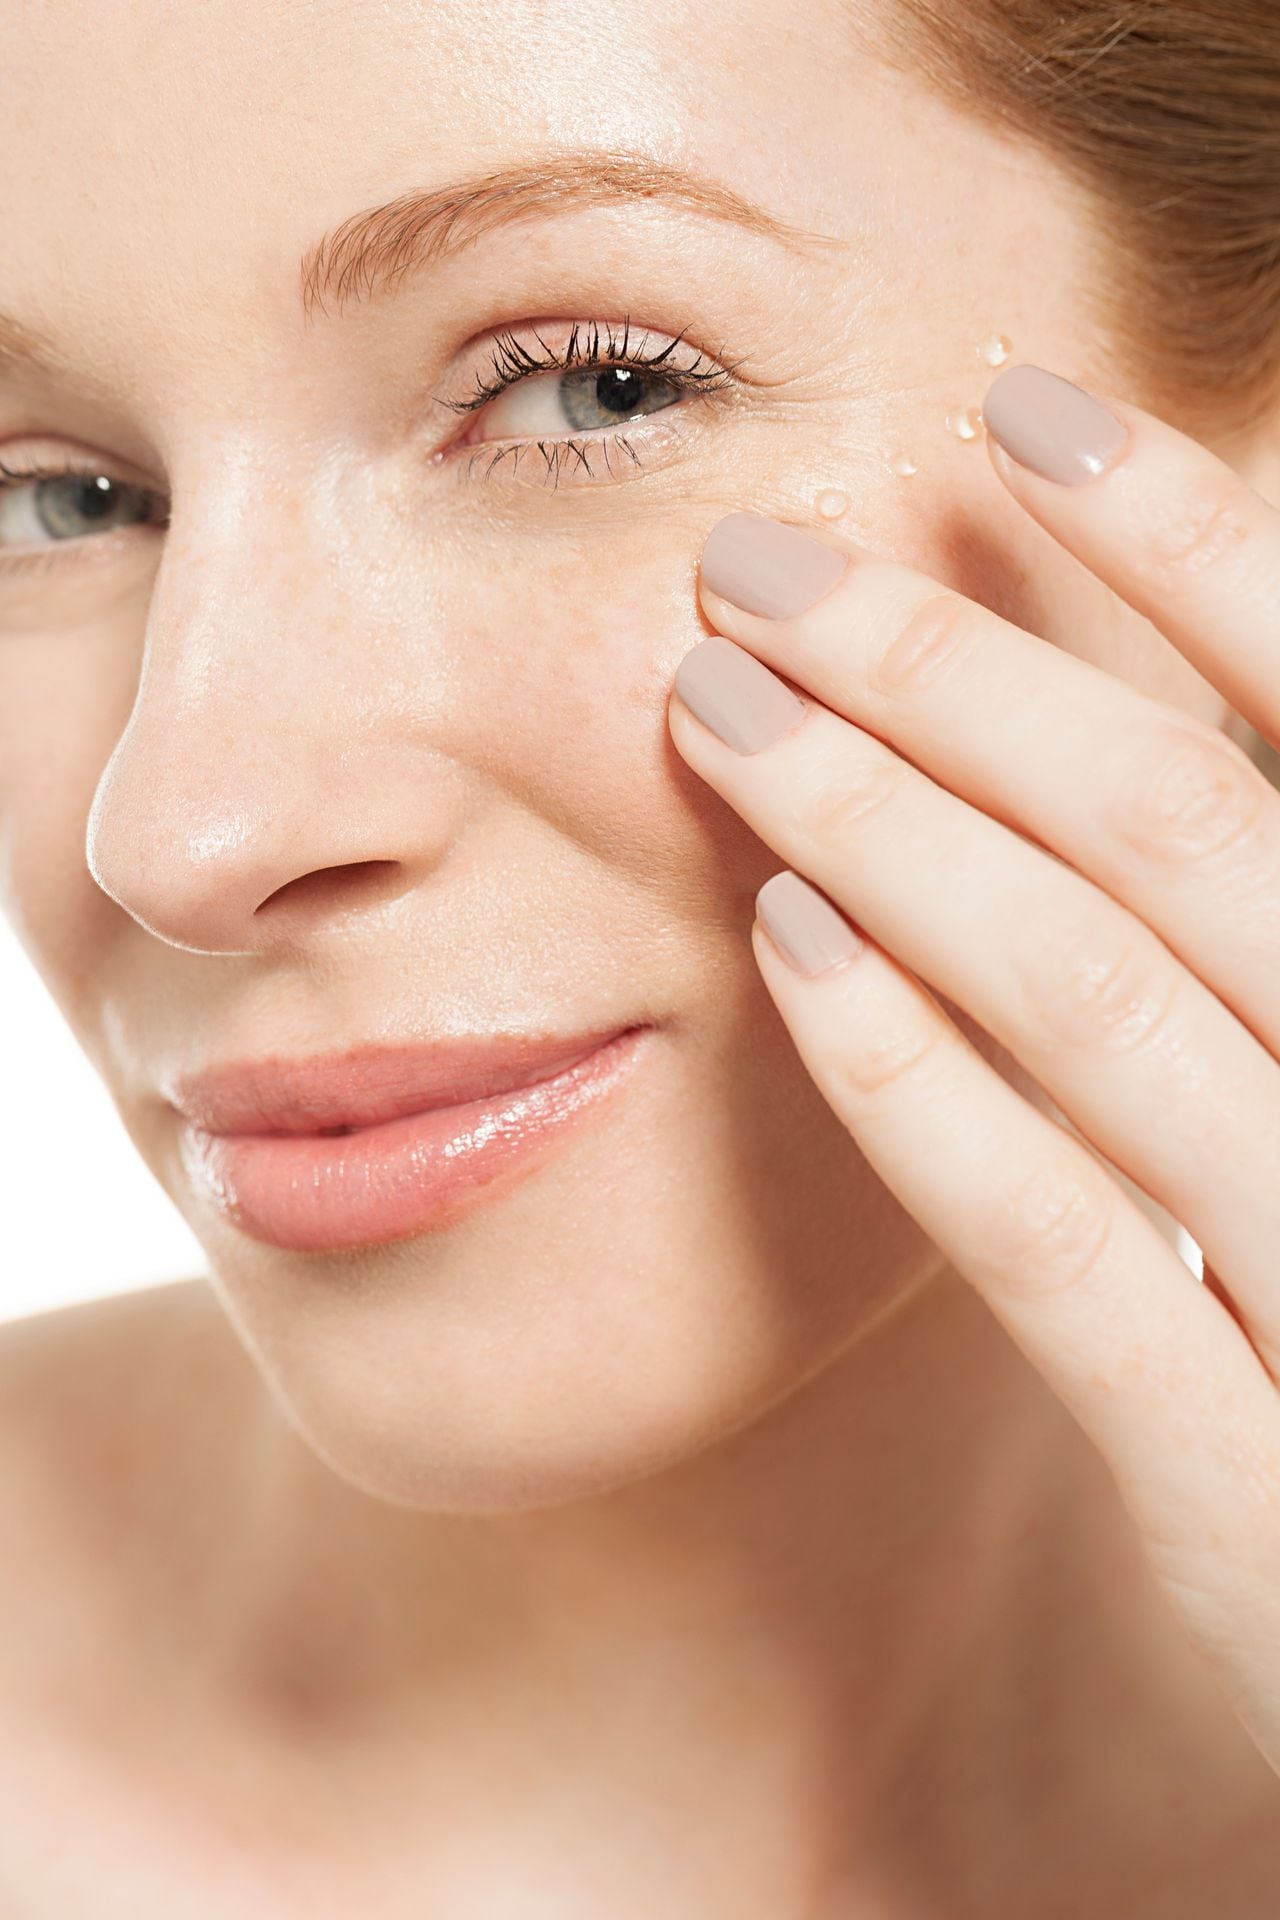 La aparición de manchas en la piel se puede presentar por múltiples factores.